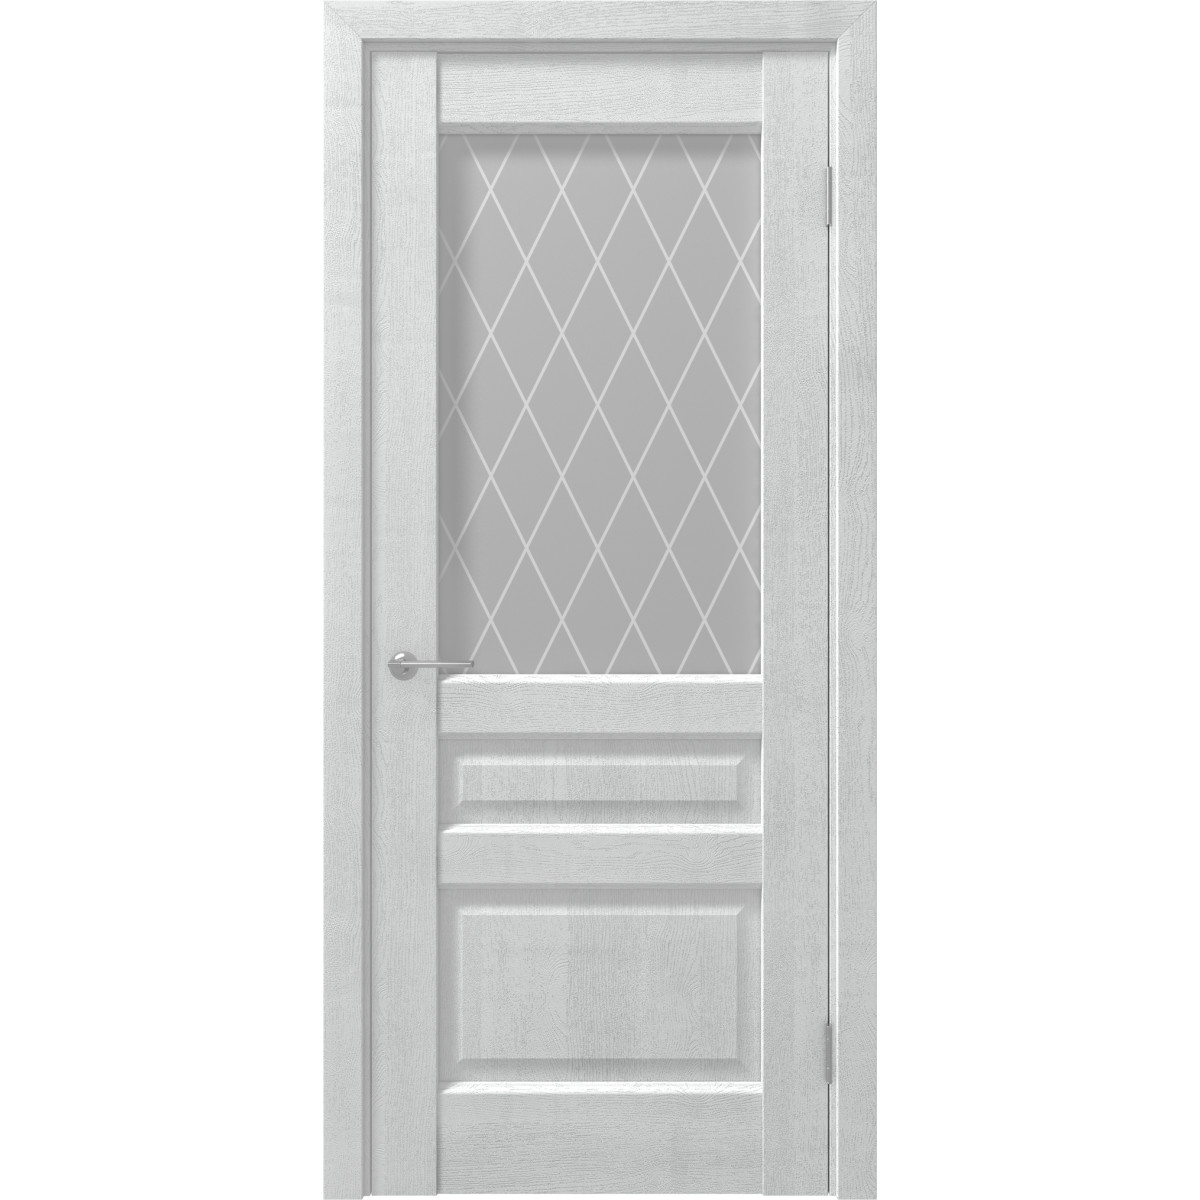 Дверь межкомнатная остеклённая с замком и петлями в комплекте Artens Магнолия 80x200 см ПВХ цвет айсберг